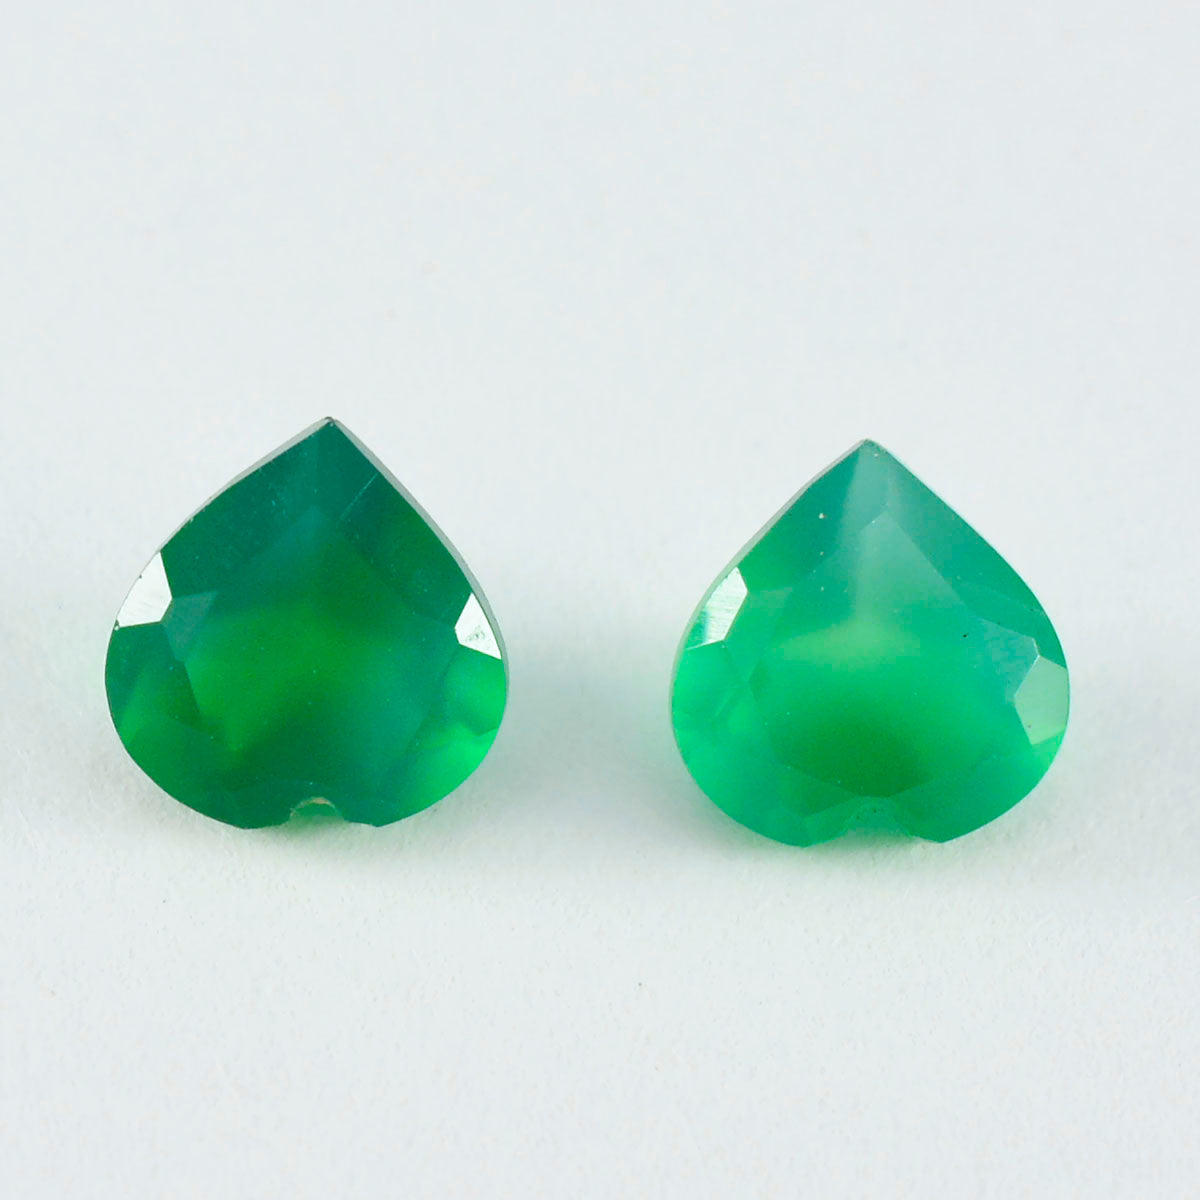 Riyogems 1 pieza de ónix verde natural facetado, 9x9 mm, forma de corazón, piedra preciosa de calidad bonita